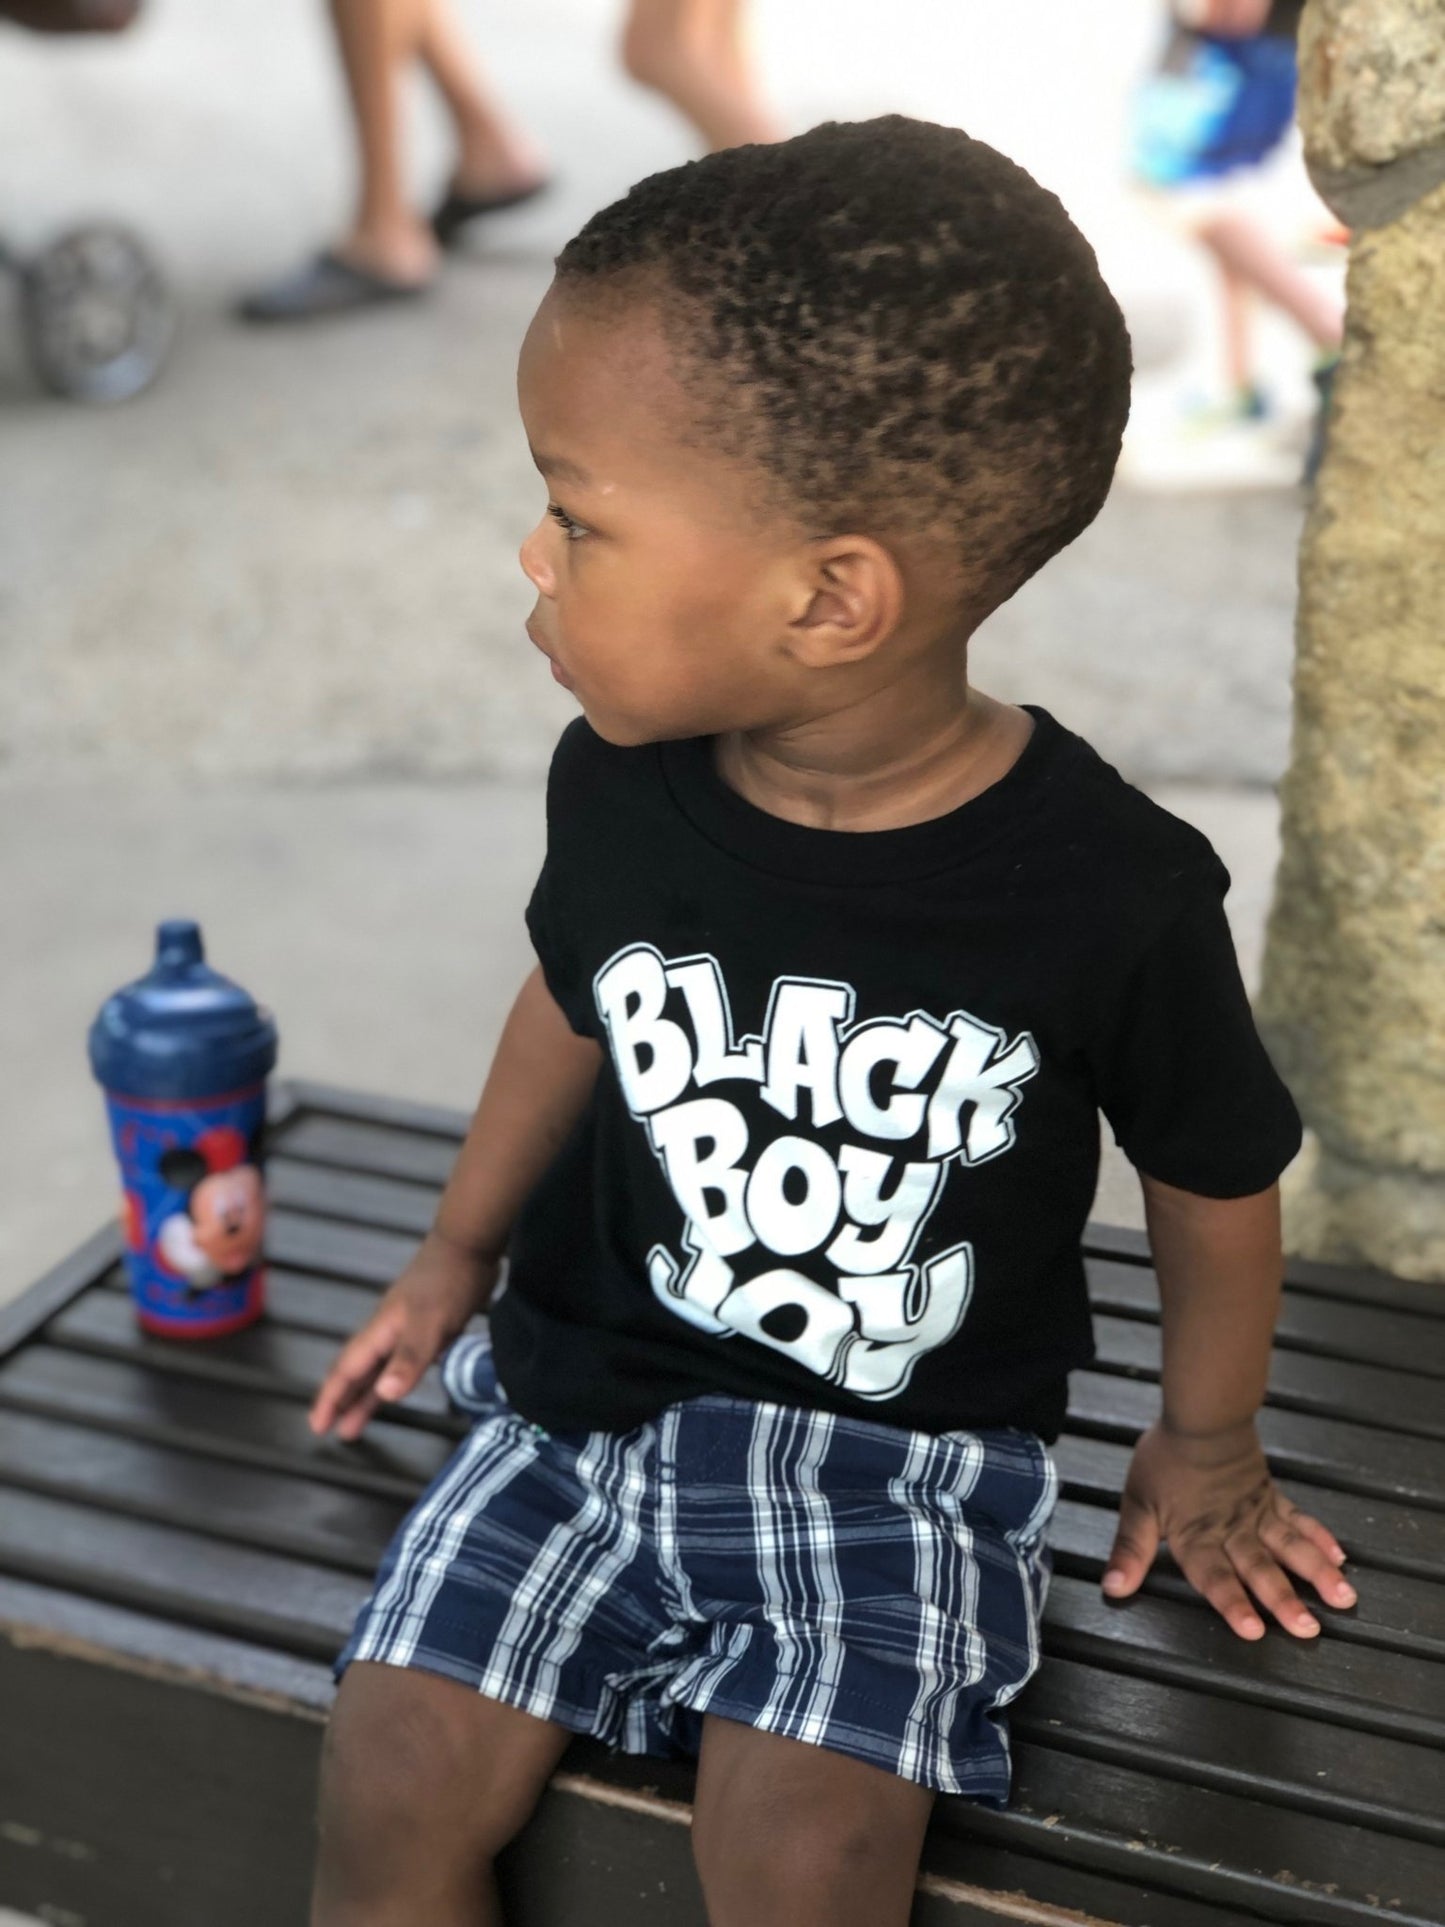 2 year old black boy